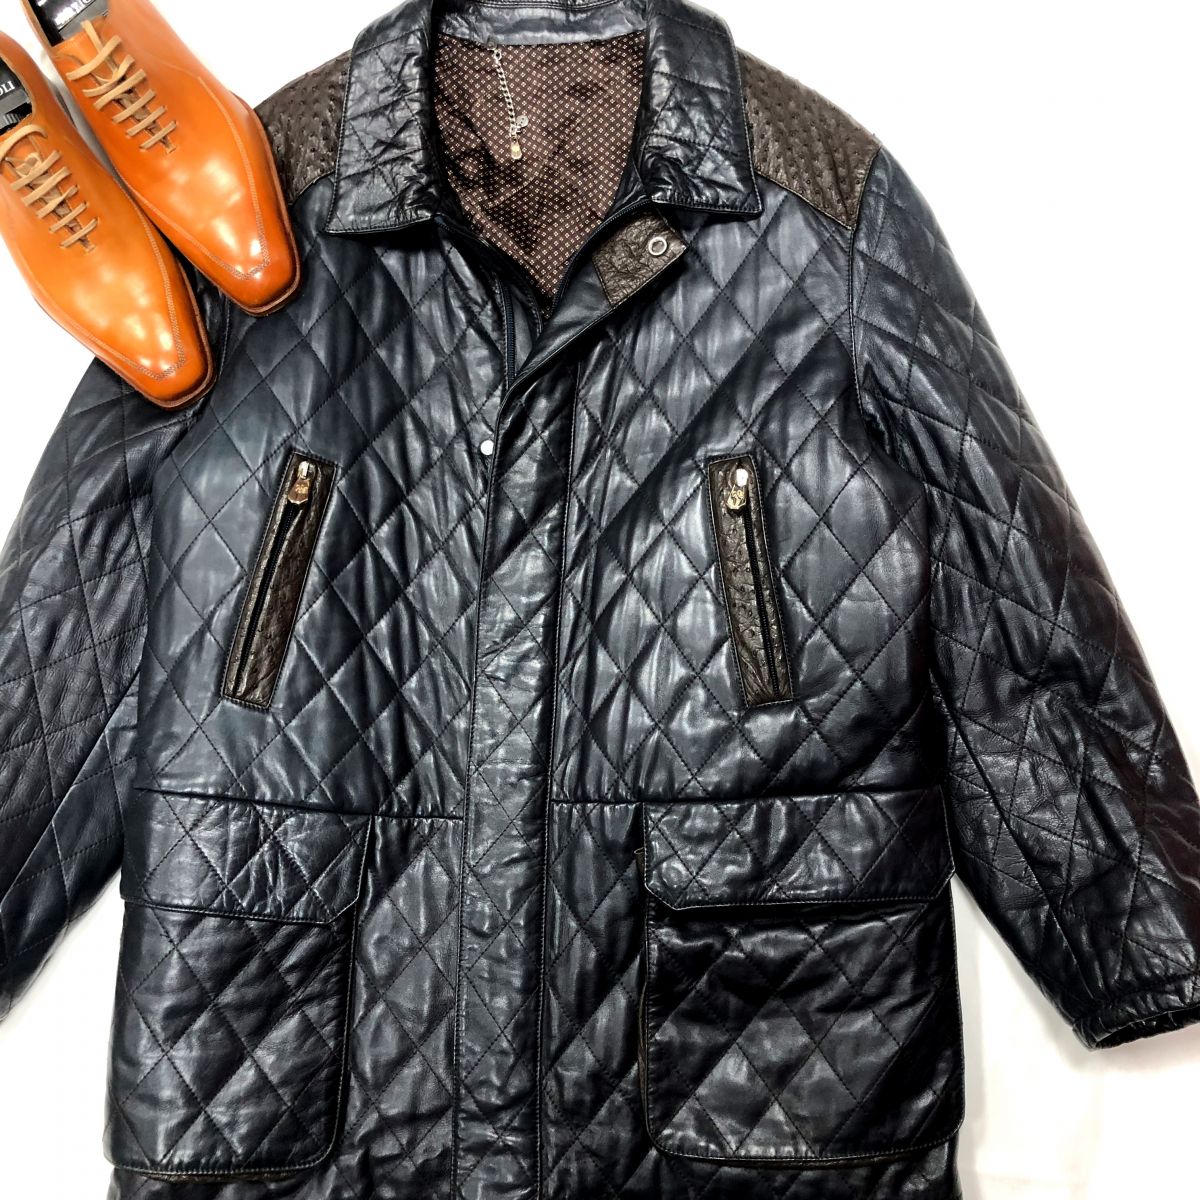 #Mechtamen
Куртка /кожа/ UOMO размер 58 цена 64 617 руб